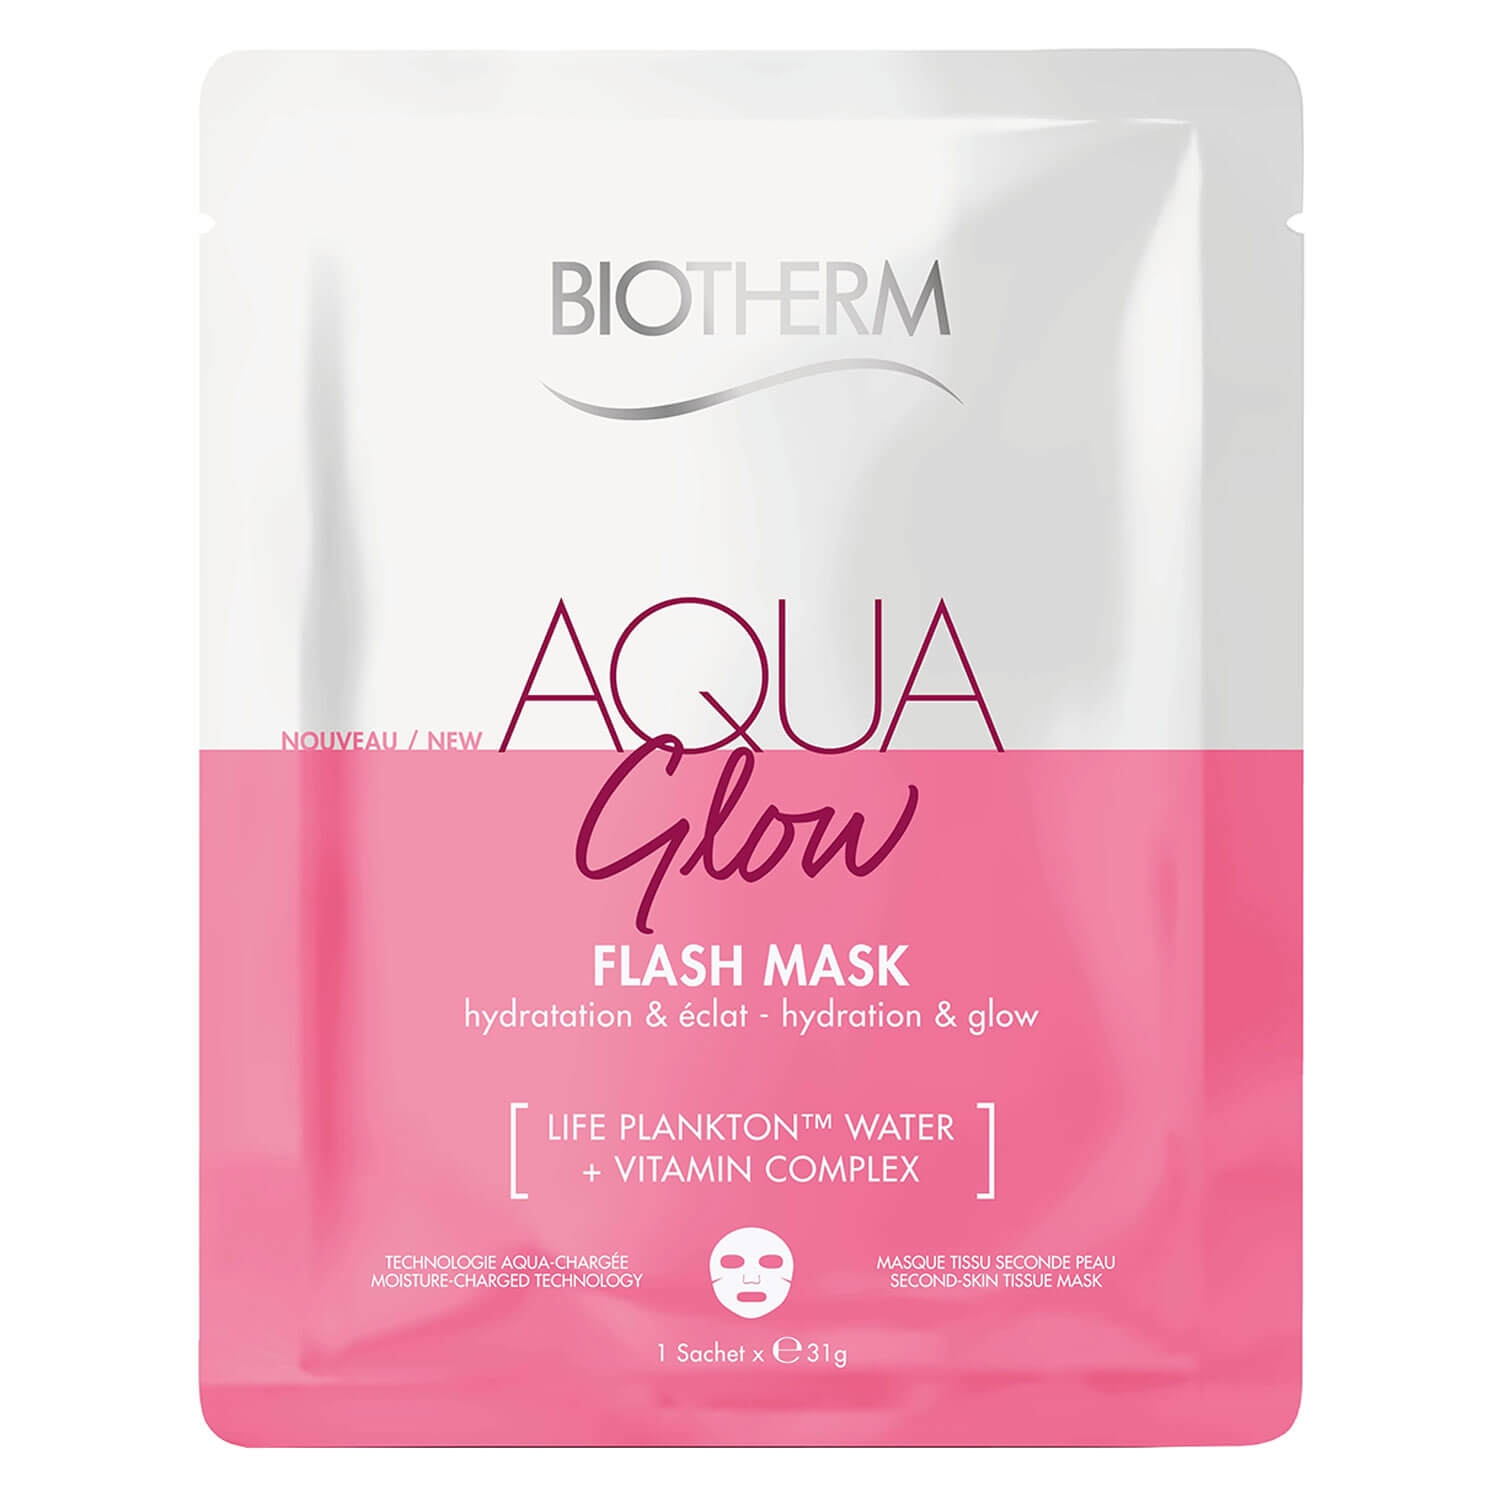 Produktbild von Biotherm Aqua - Glow Flash Mask